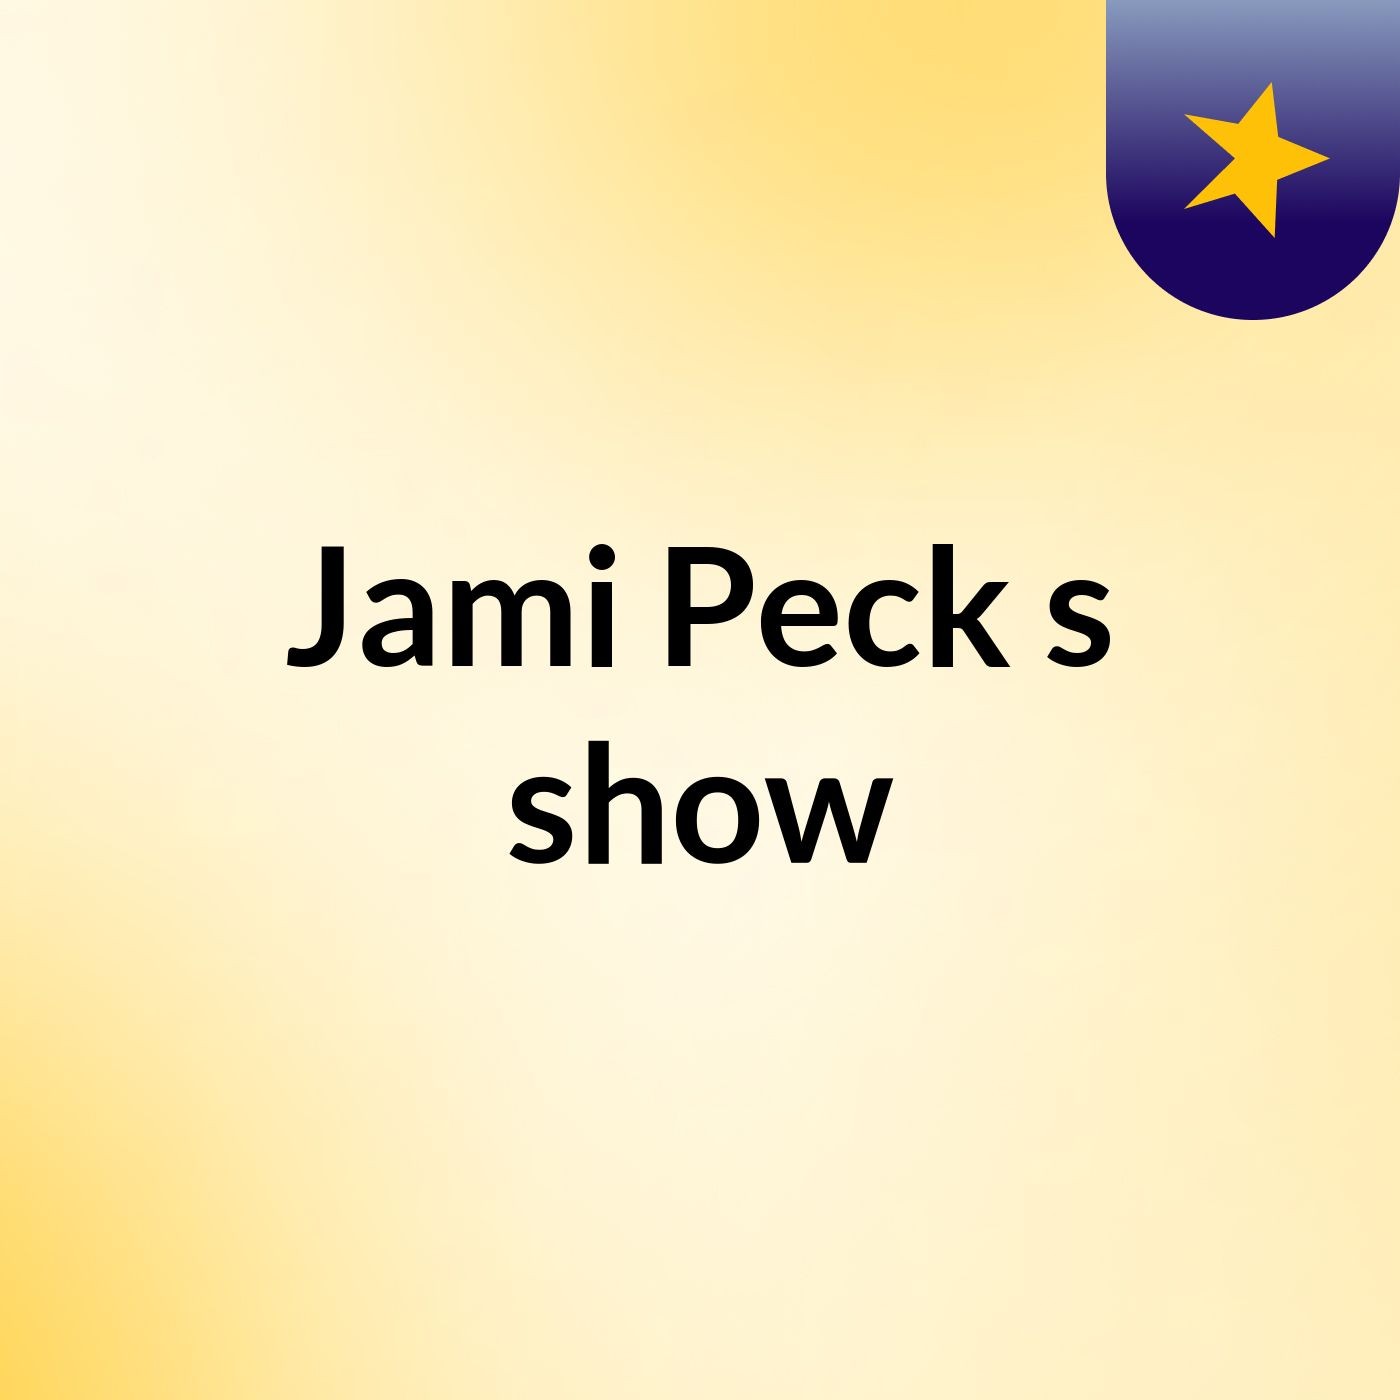 Jami Peck's show